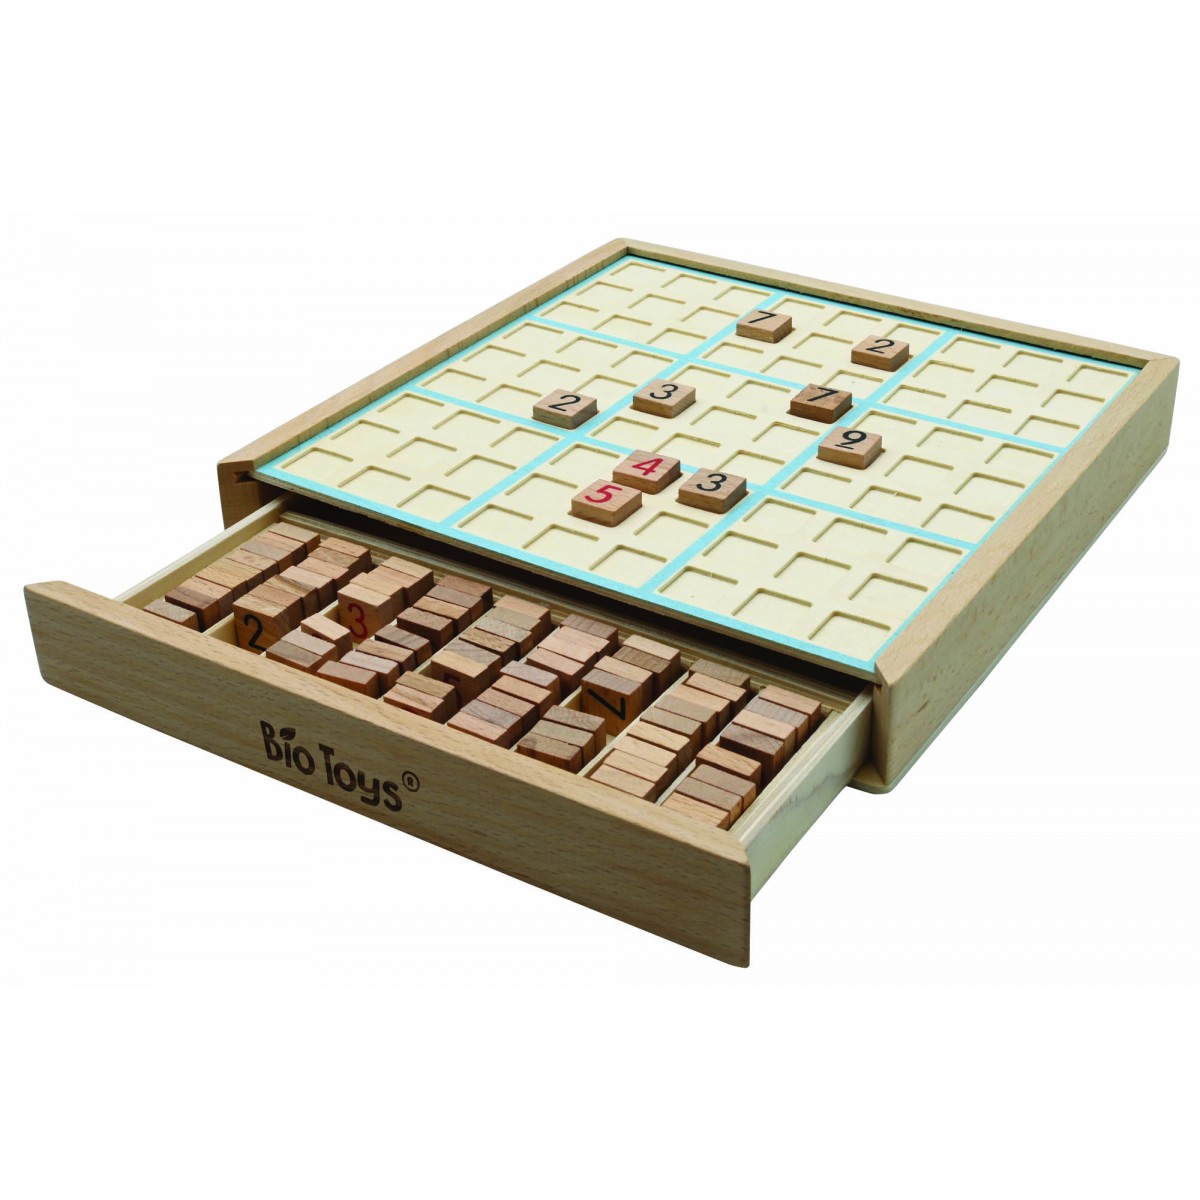 Bio Toys Wooden sudoku game, eco-friendly